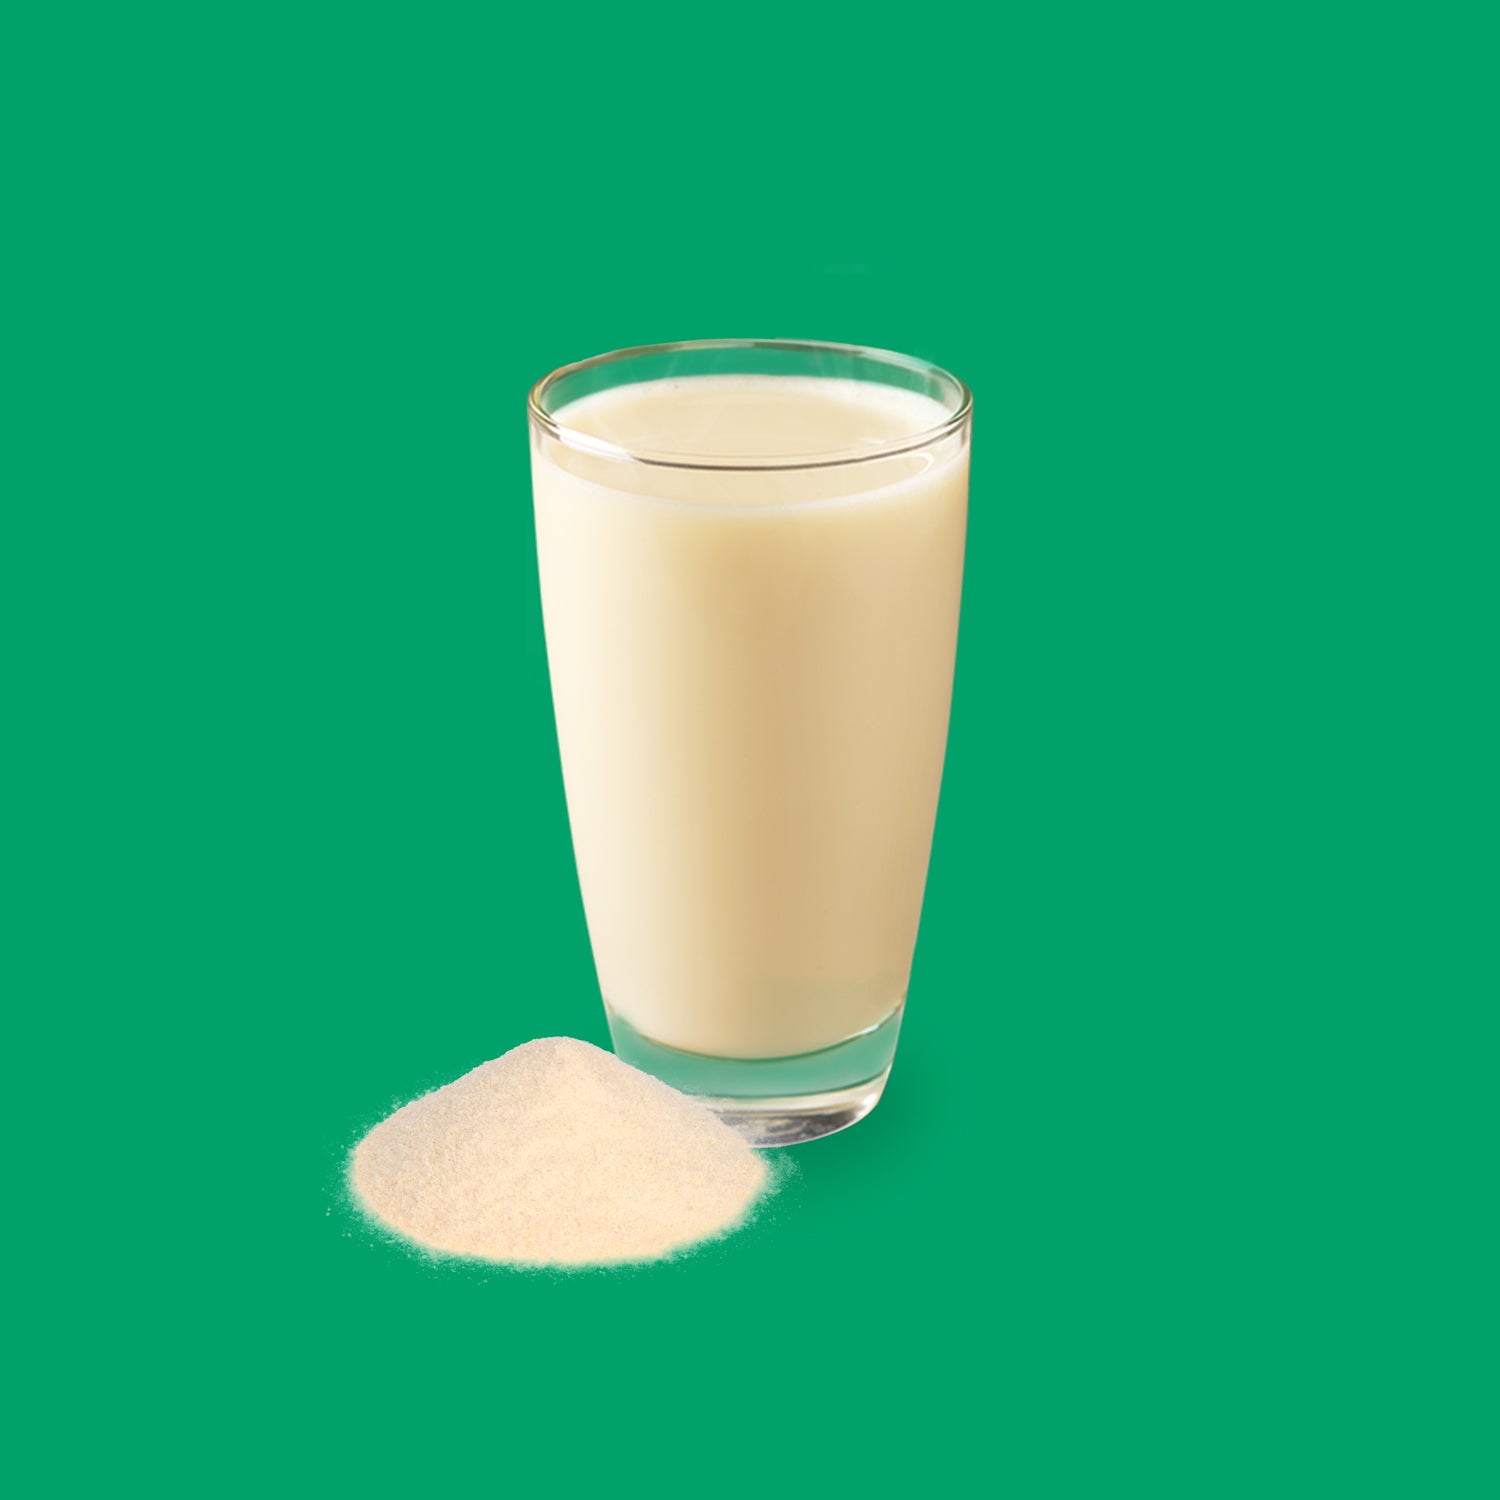 Drinkmich Hafermilchpulver kleiner Haufen Hafermilchpulver vor Glas mit fertig angerührter Hafermilch vor dunkelgrünem Hintergrund